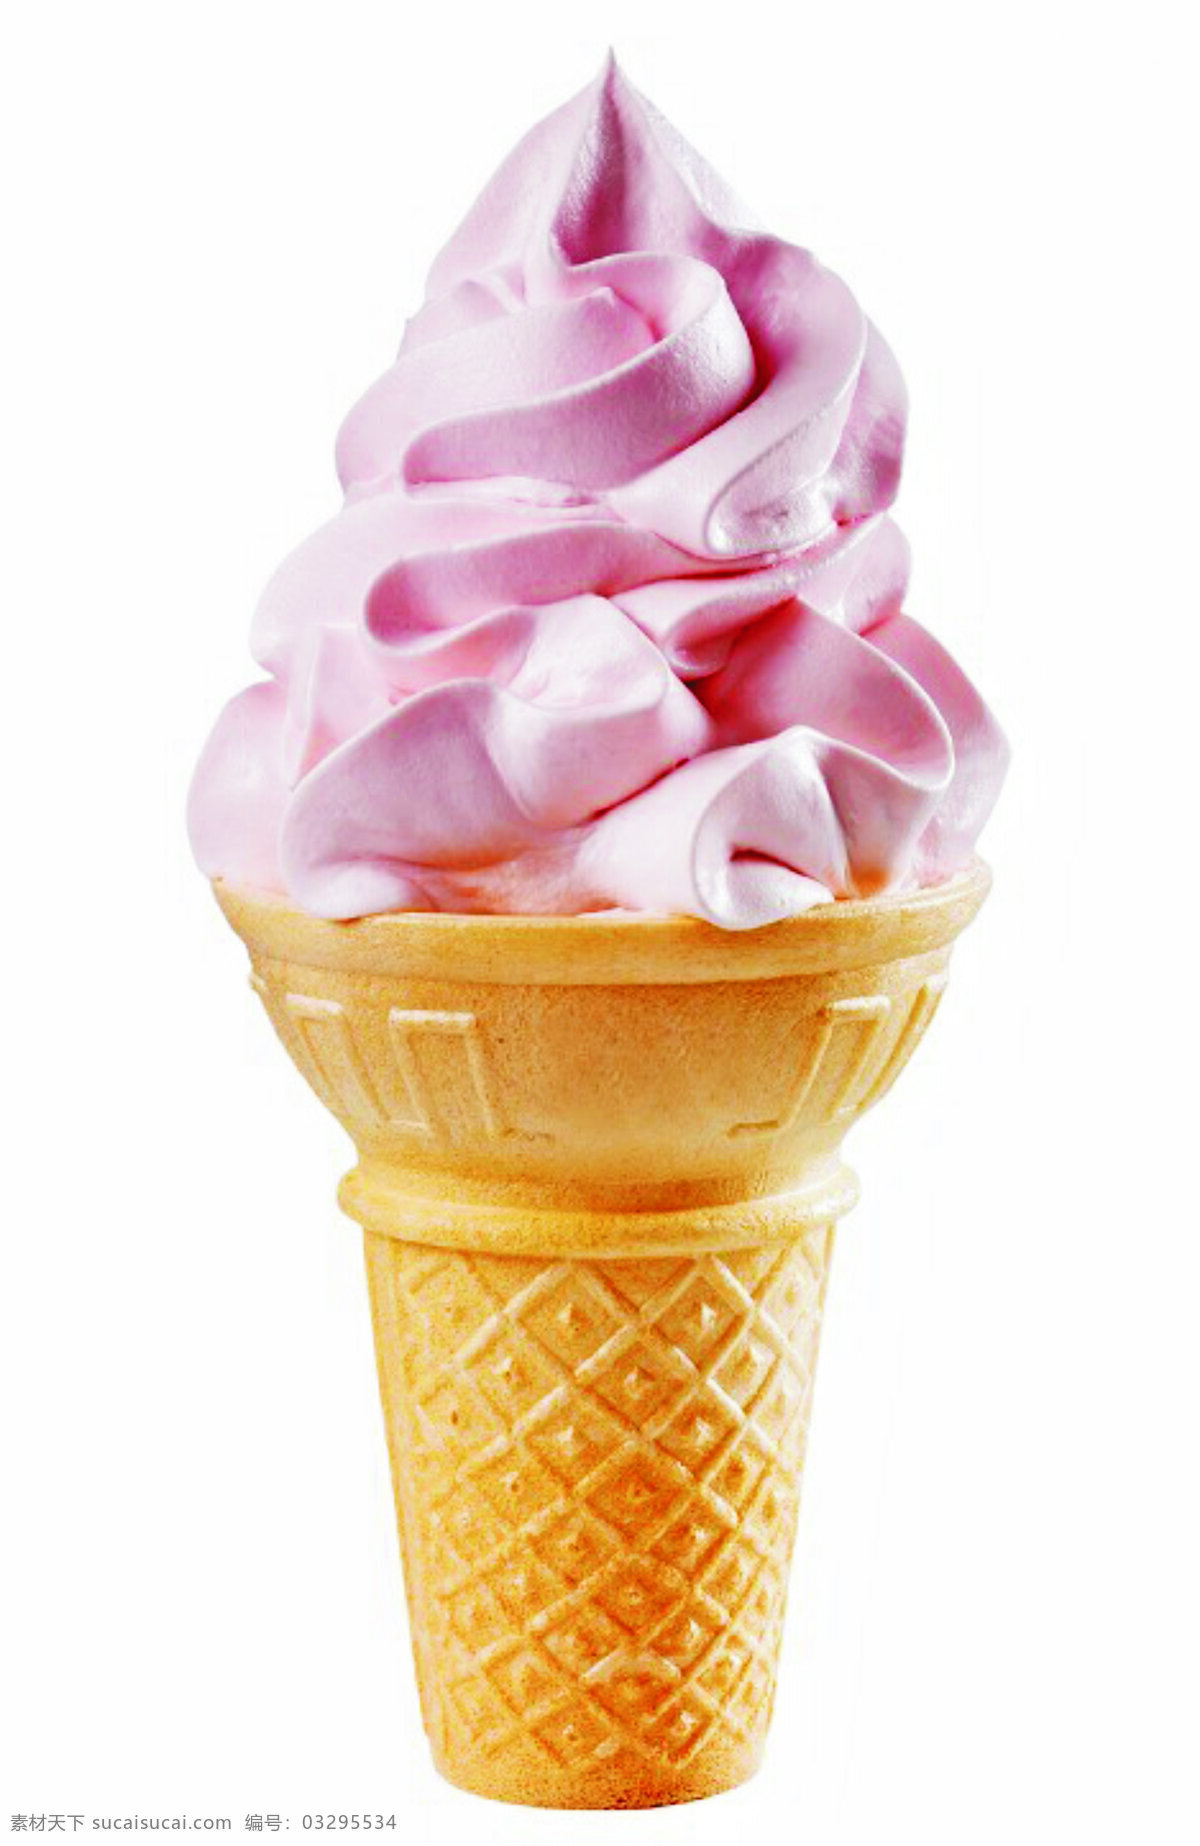 脆皮冰淇淋 脆皮 冰淇淋 草莓汁 奶油 花形 层次 大波浪 香料 餐饮美食 西餐美食